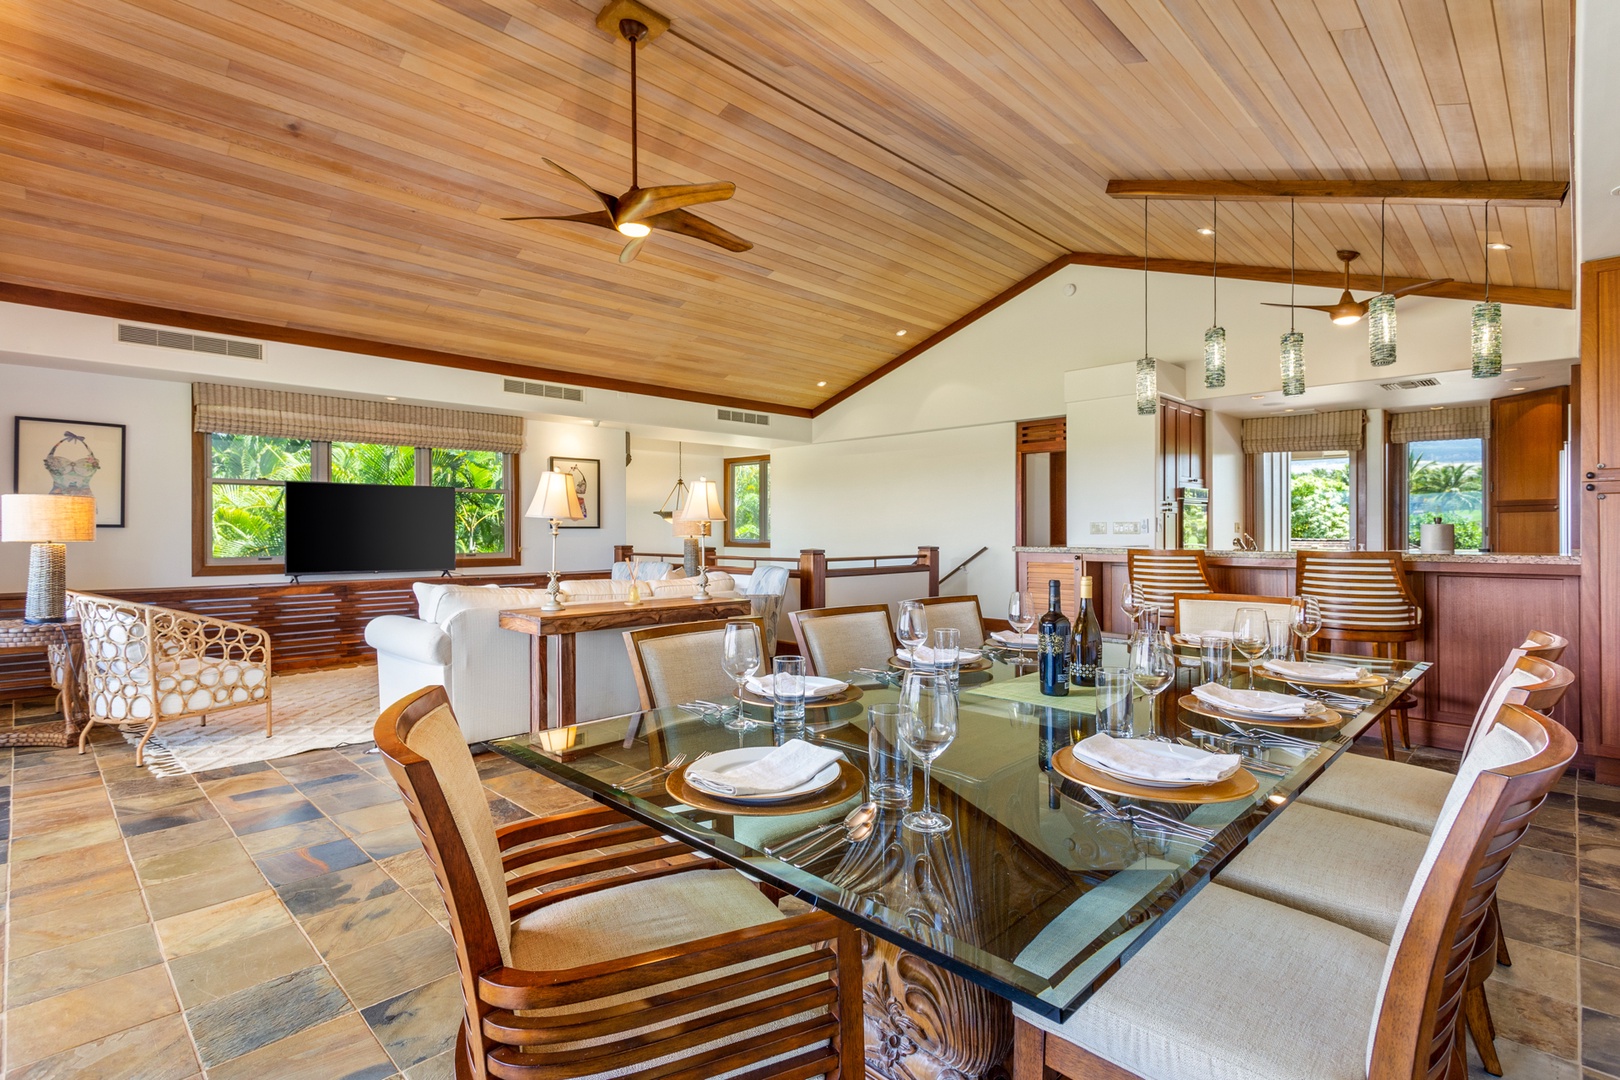 Kailua Kona Vacation Rentals, OFB 3BD Ka'Ulu Villa (129D) at Four Seasons Resort at Hualalai - View of dining table toward the modern kitchen with bar seating.